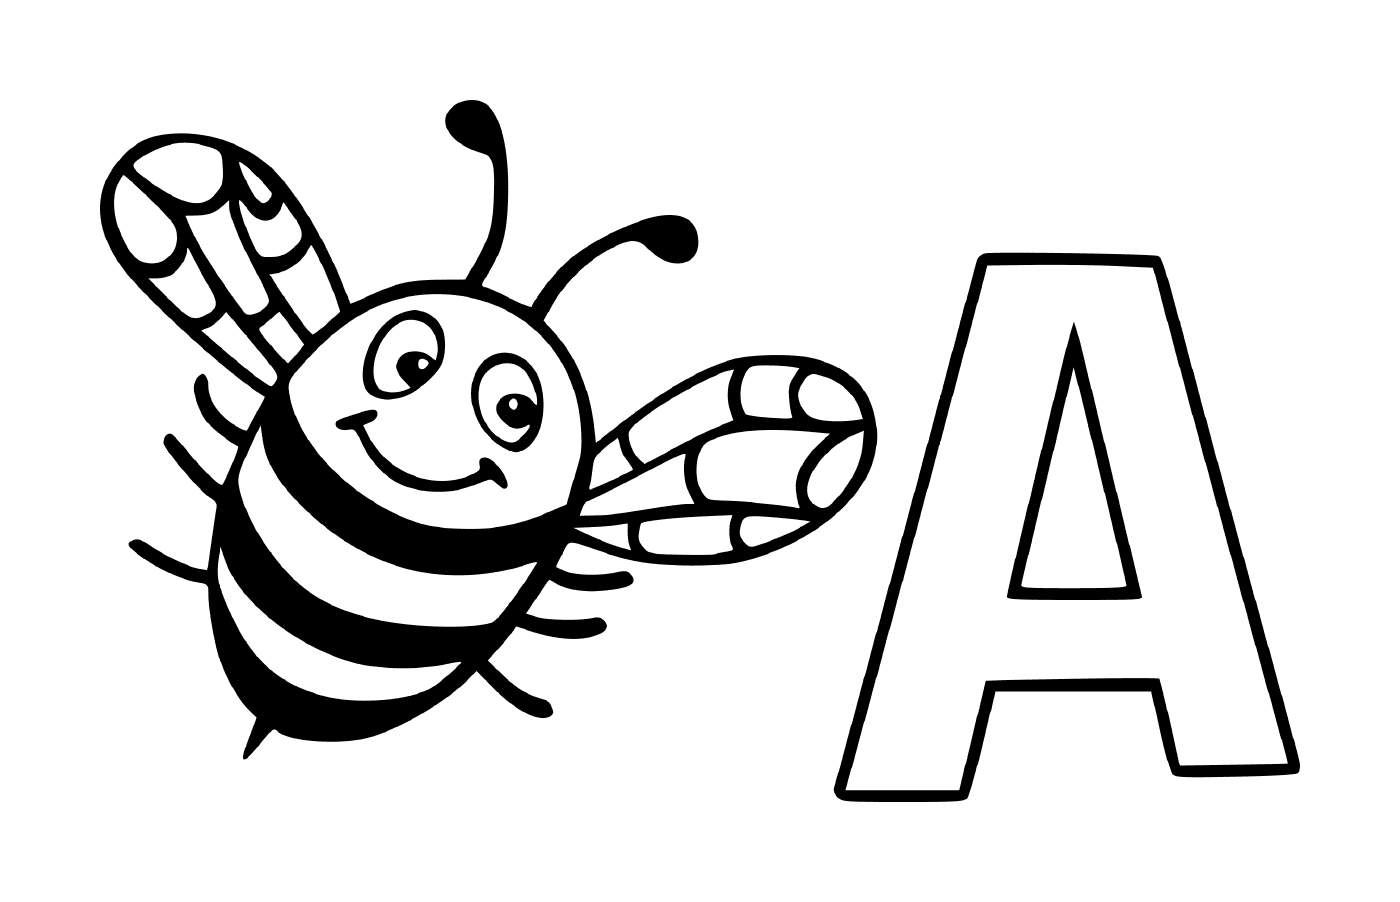  Письмо А с пчелиной пчелой 